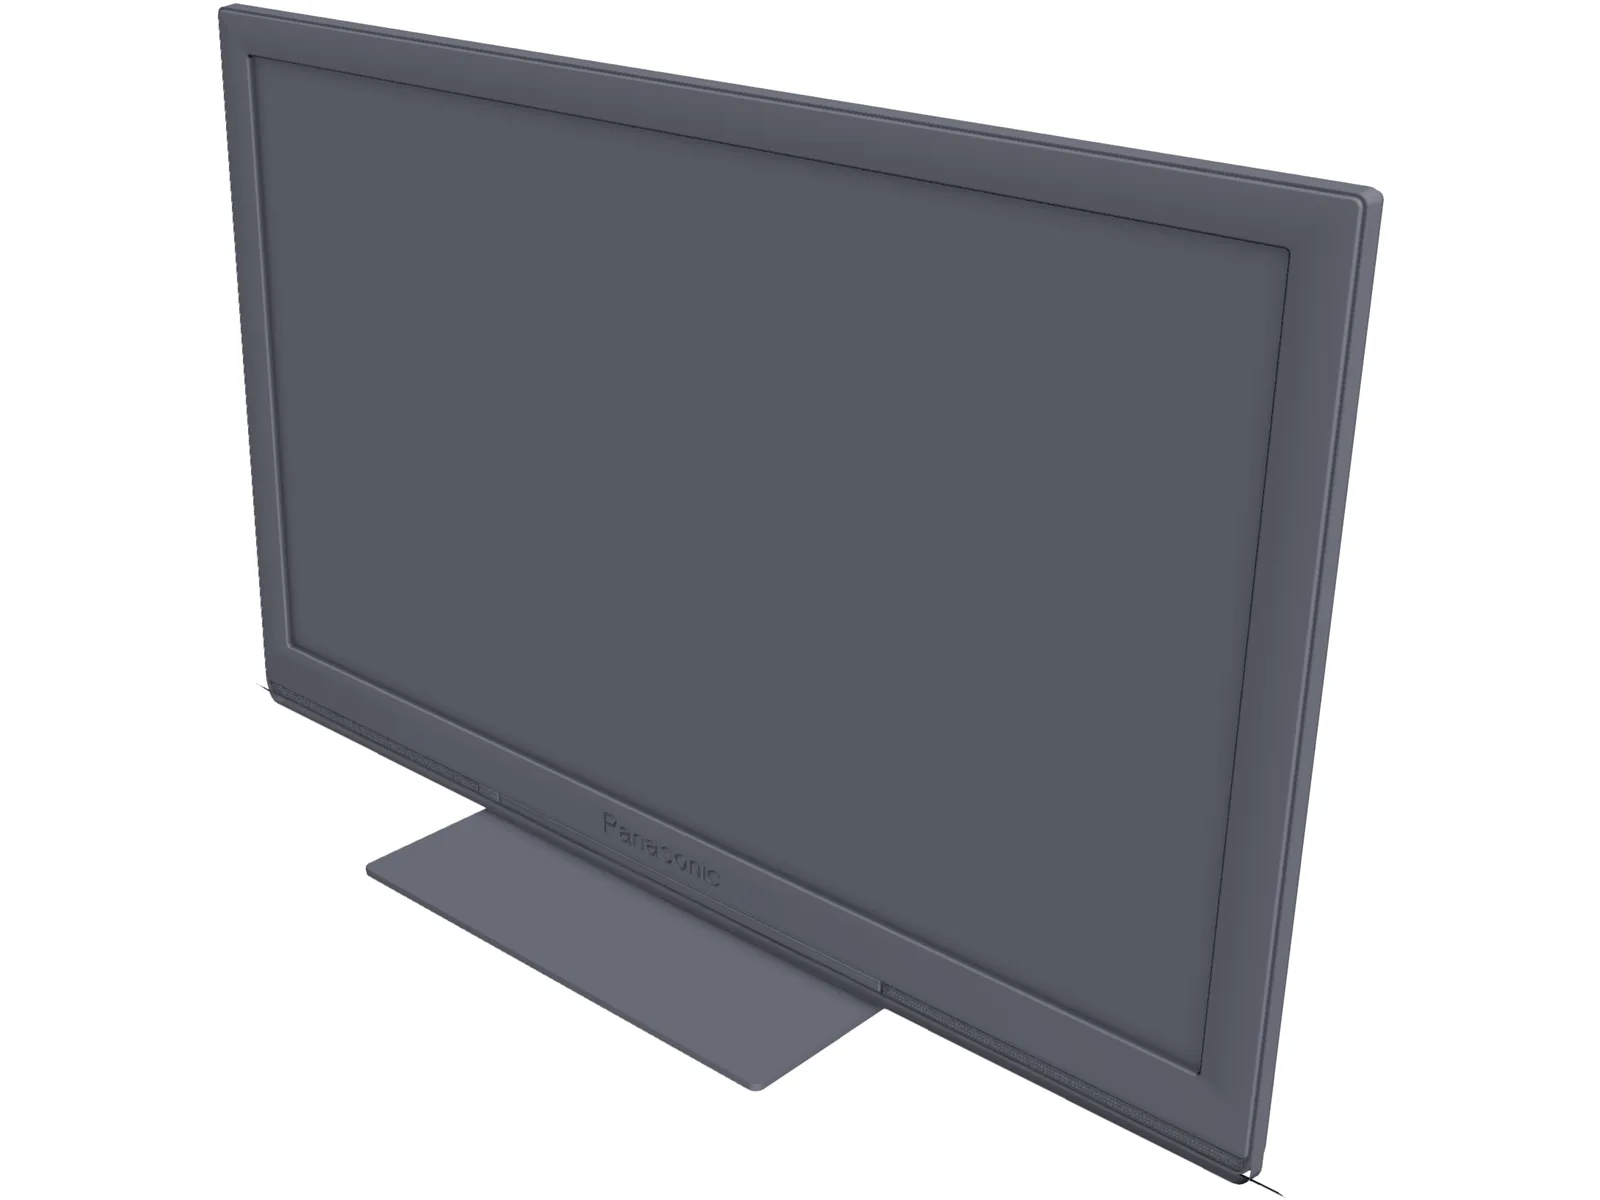 Panasonic TX-P46ST30B Plasma TV 3D Model